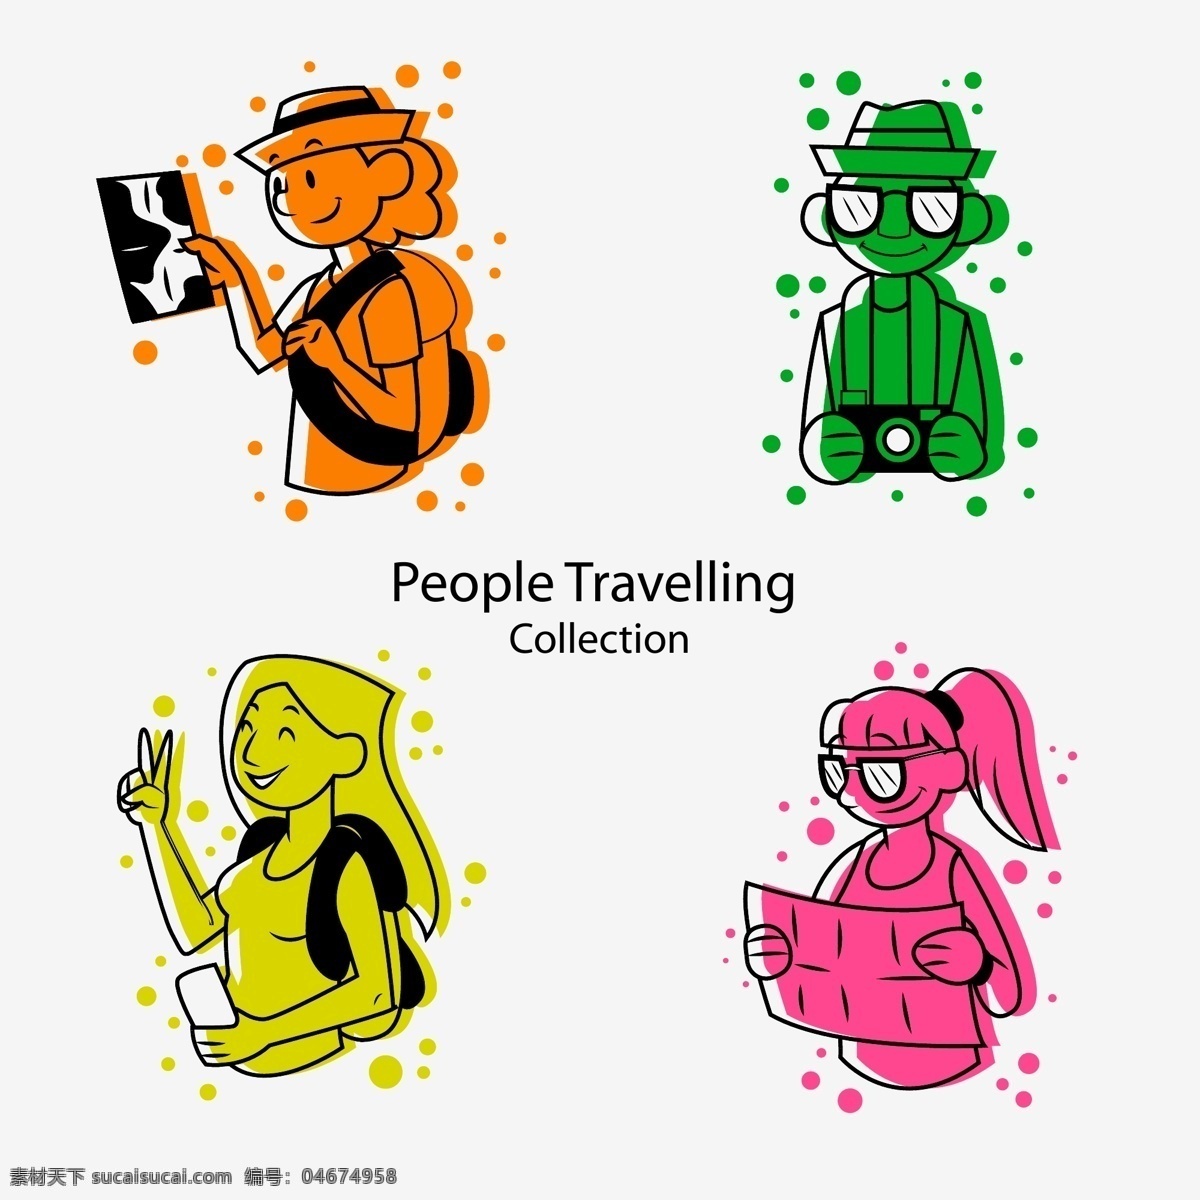 旅游人物 矢量人物 卡通人物 手绘人物 去旅行 人物插画 线条人物 线描人物 矢量游客 时尚人物 旅游男人 旅游女人 旅游元素 旅游素材 旅行元素 旅行素材 人物卡通 人物图库 生活人物